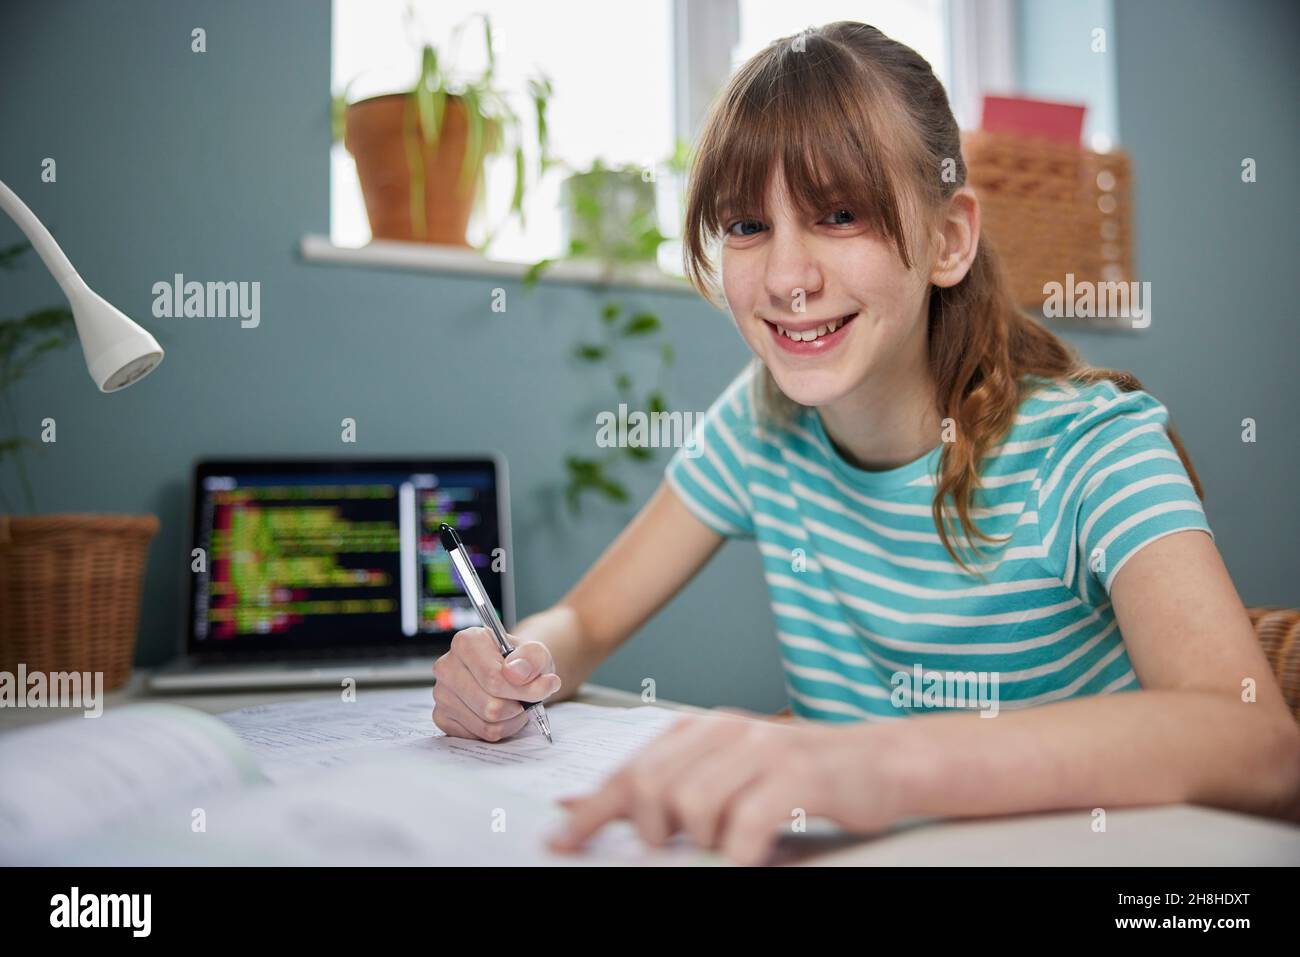 Ritratto della ragazza di adolescente che fa il lavoro alla scrivania nella camera da letto Foto Stock